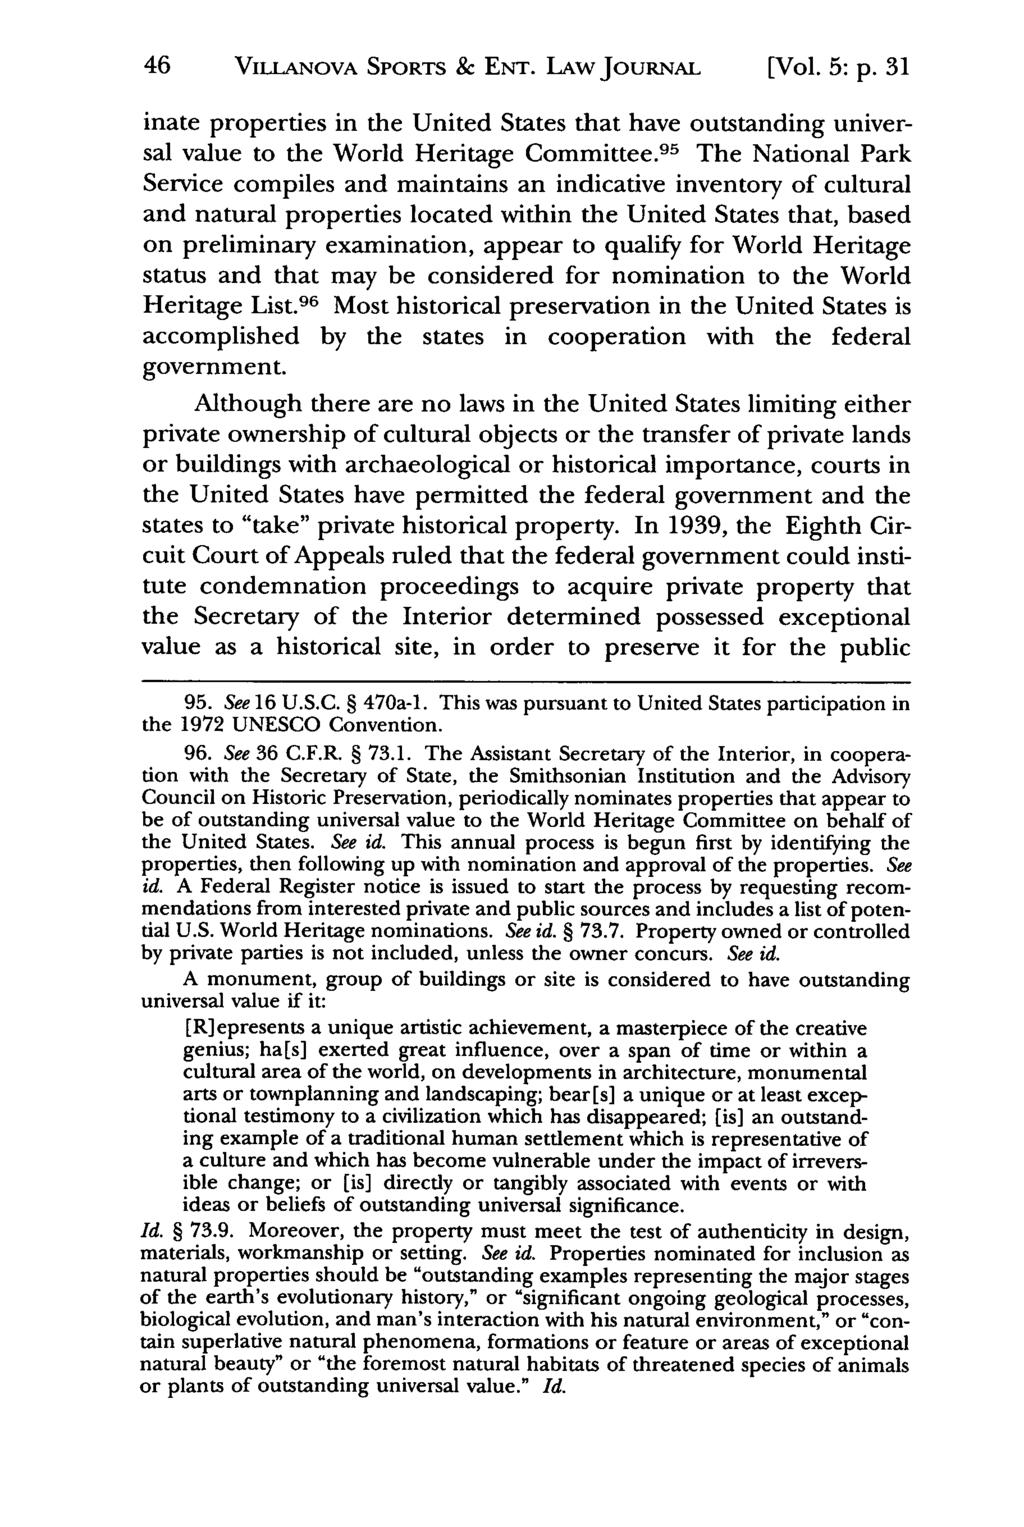 46 VILLANOVA Jeffrey S. Moorad SPORTS Sports Law & Journal, ENT. LAw Vol. 5, JOURNAL Iss. 1 [1998], Art. 4 [Vol. 5: p.